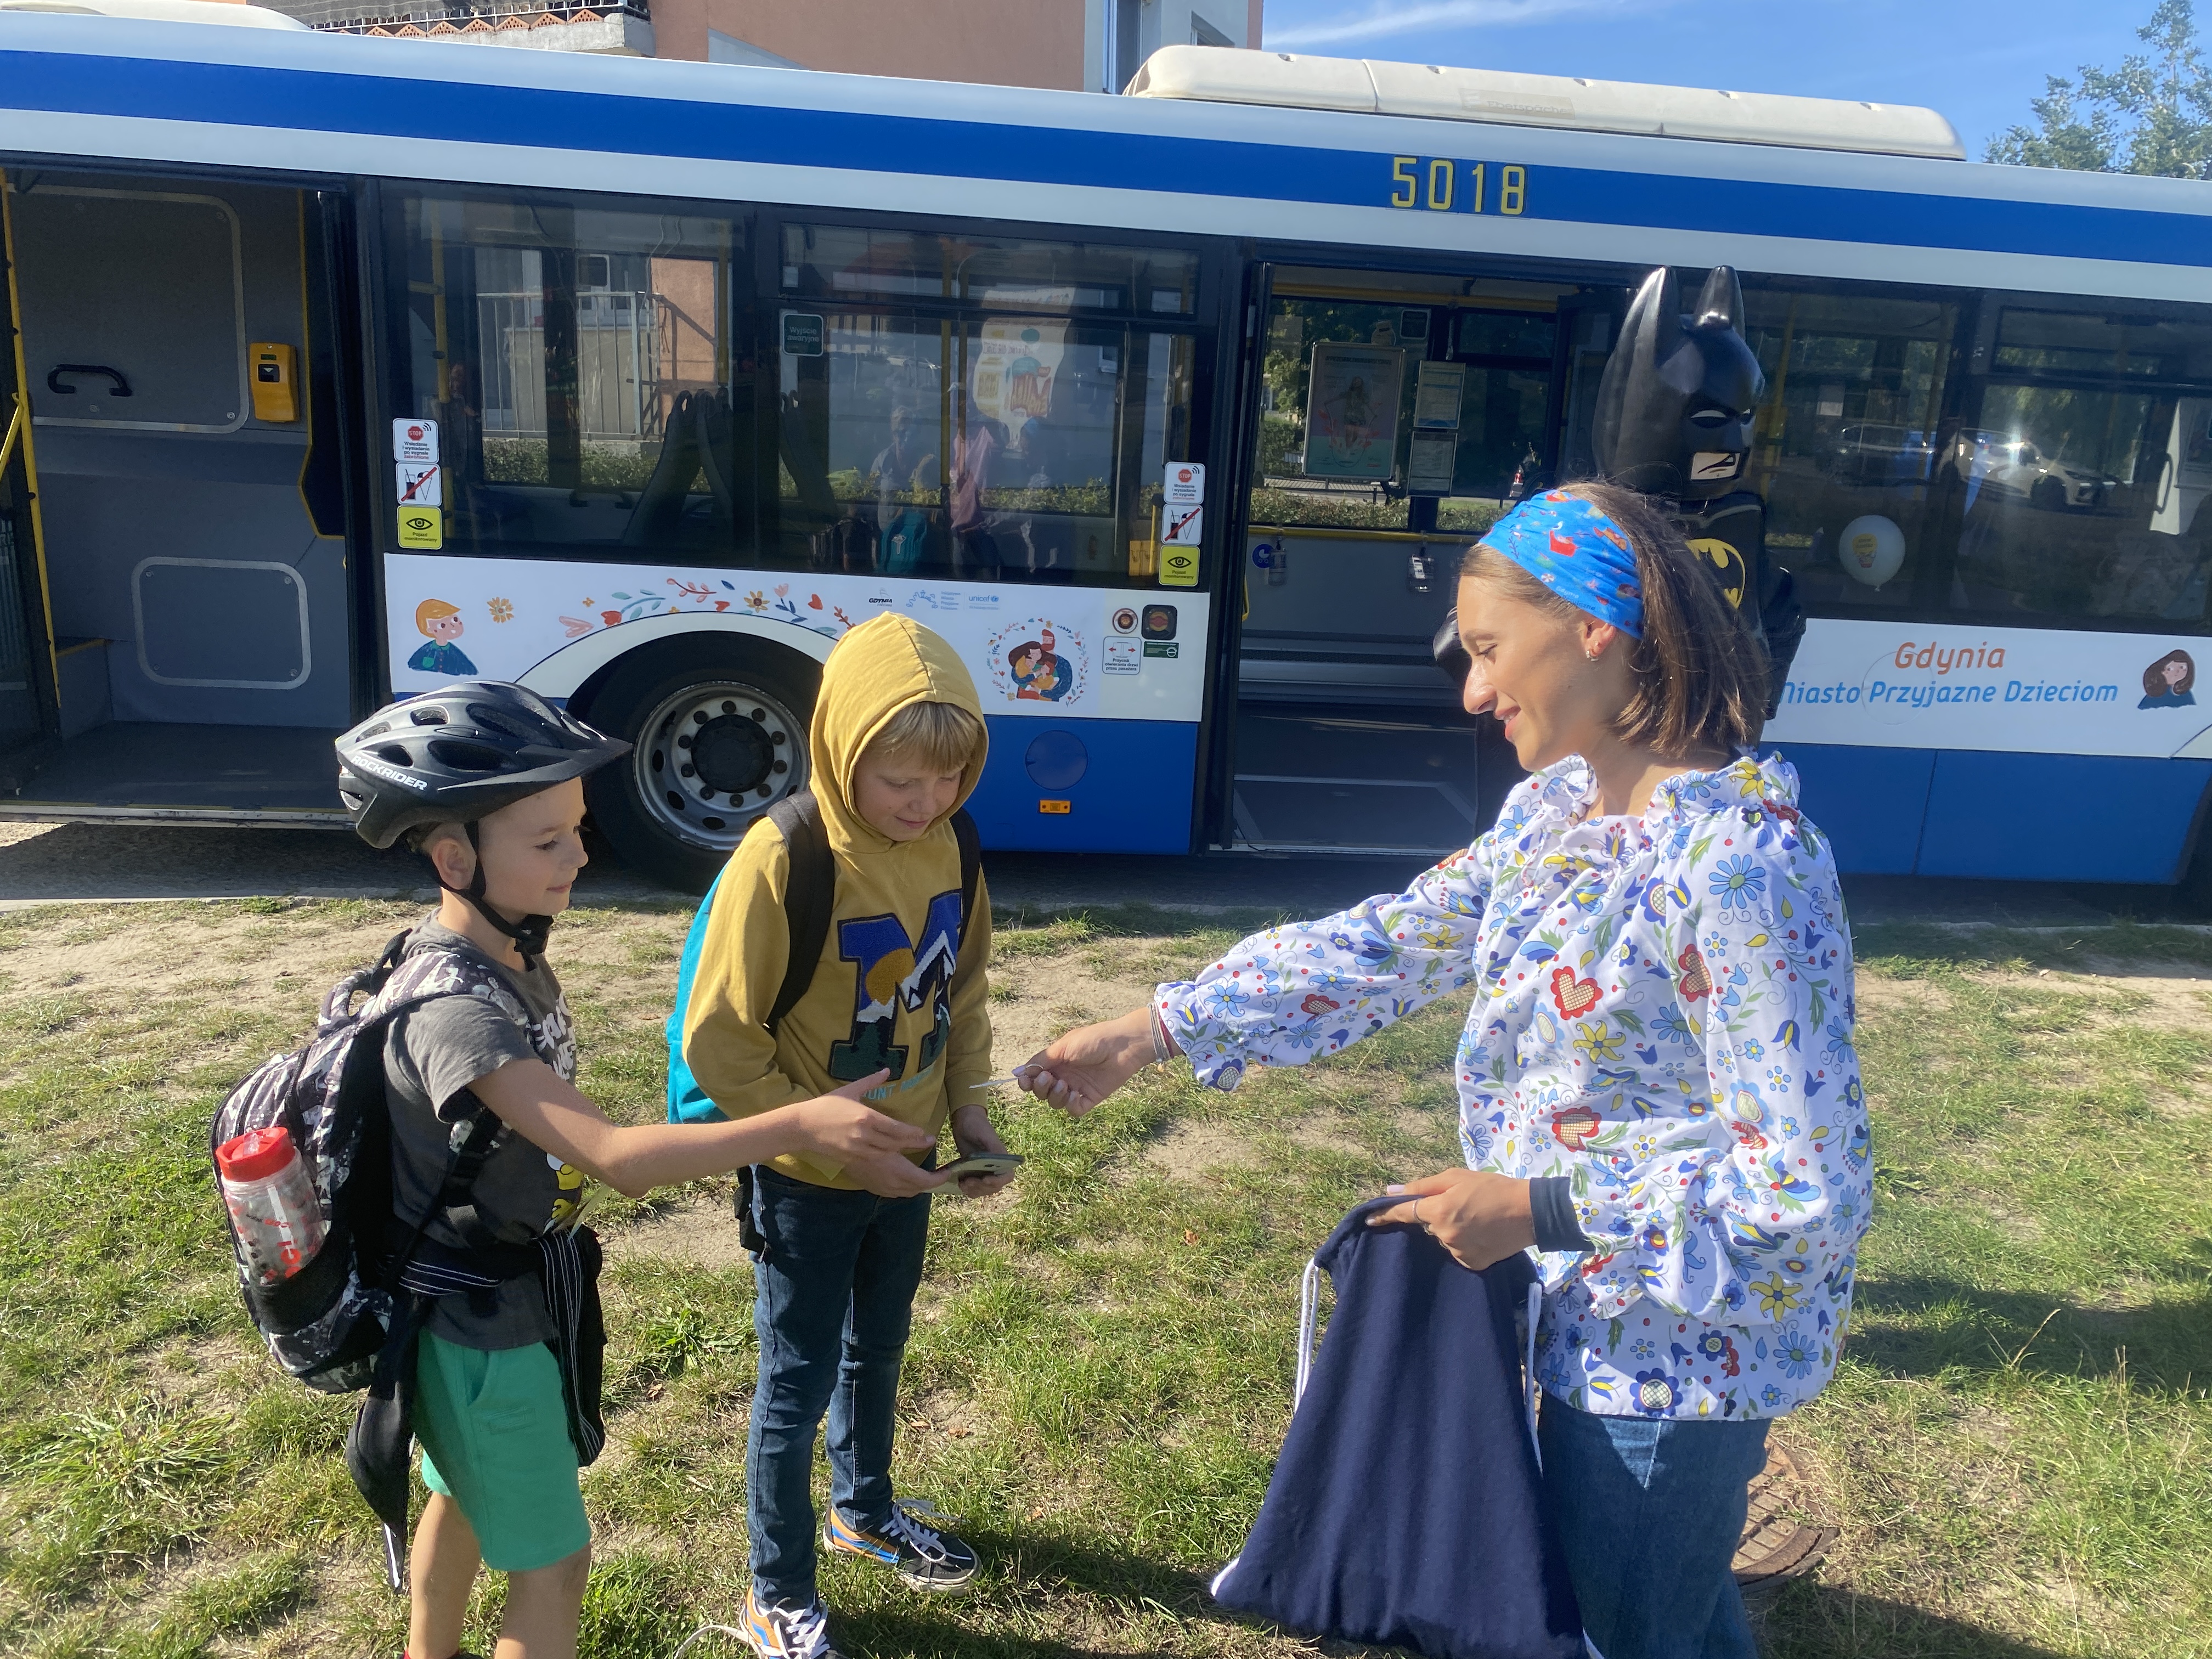 Animatorka rozdaje upominki dzieciom przy autobusie z napisem „Miasto Przyjazne Dzieciom”